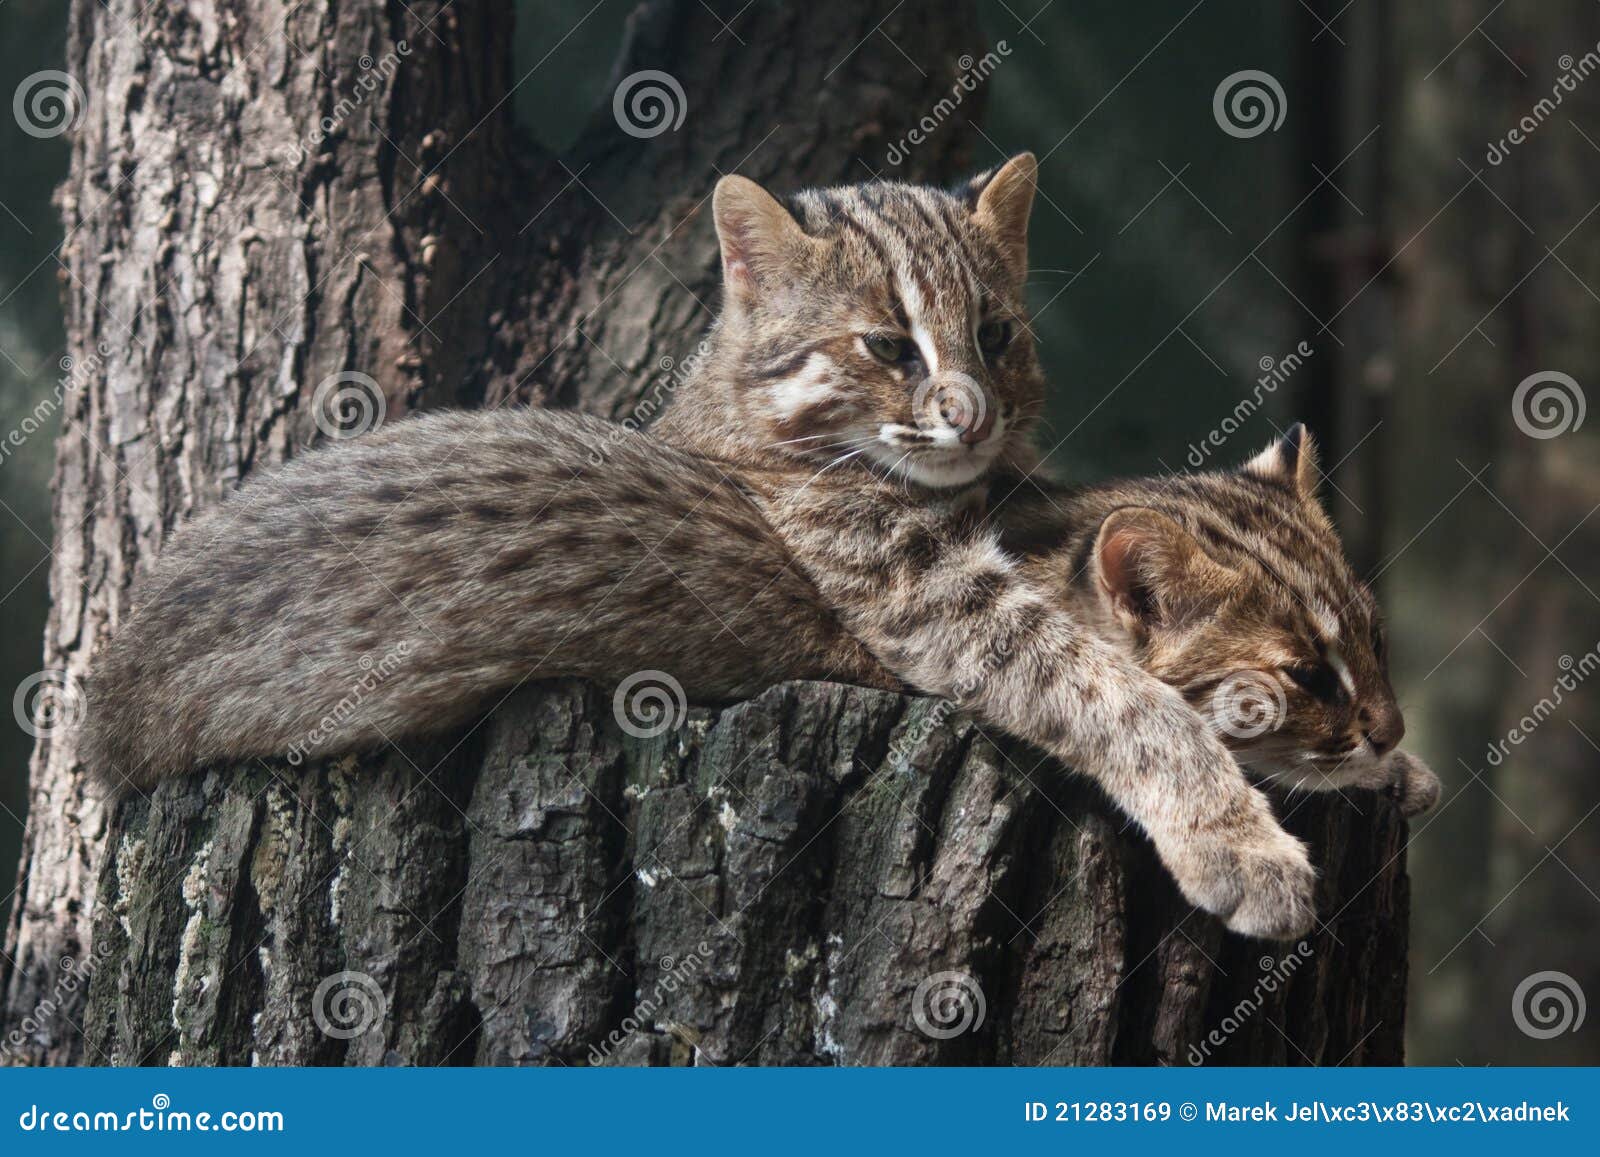 resting amur leopard cats